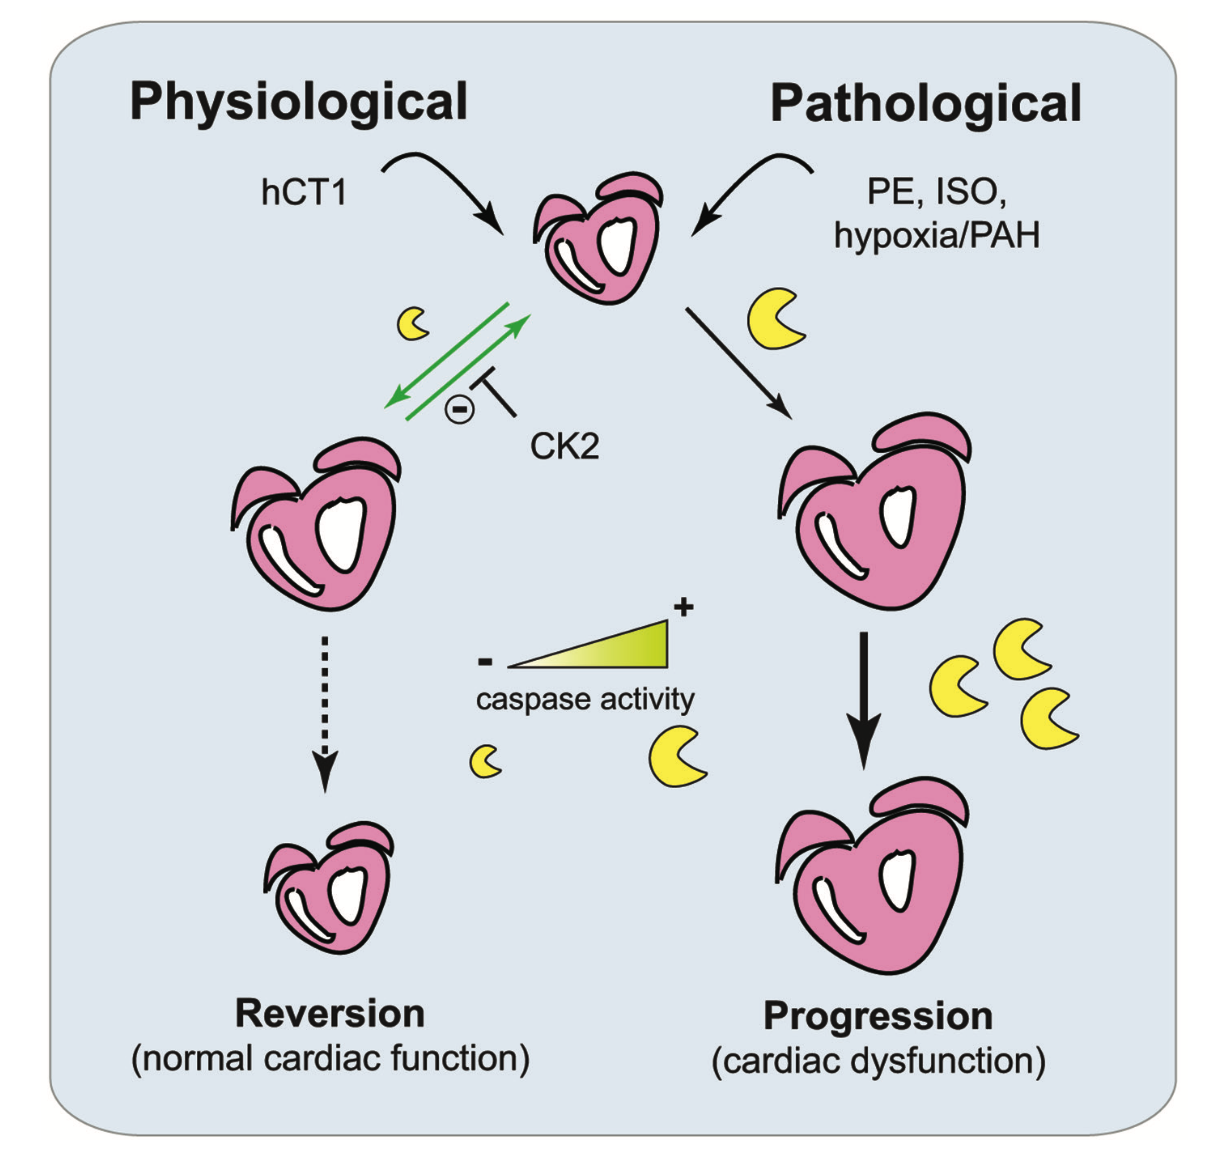 图一、hCT1 引起的生理性心脏增生与病理性增生之机制比较。来源Cell Research. doi:10.1038/cr.2017.87 。